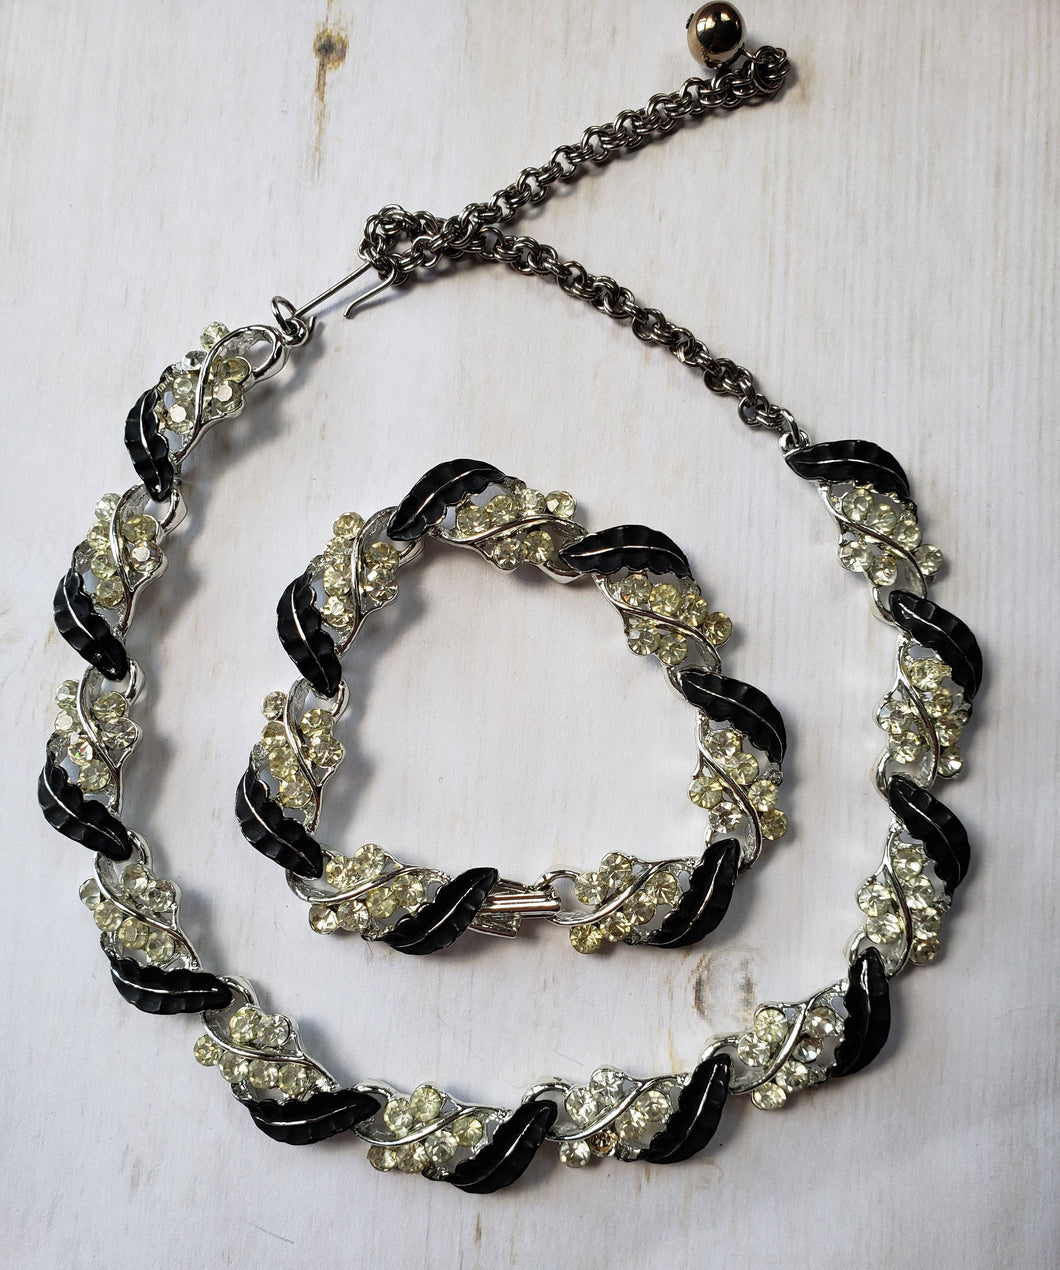 Swarovski Crystal Necklace, Sparkling Crystal Necklace, Bling